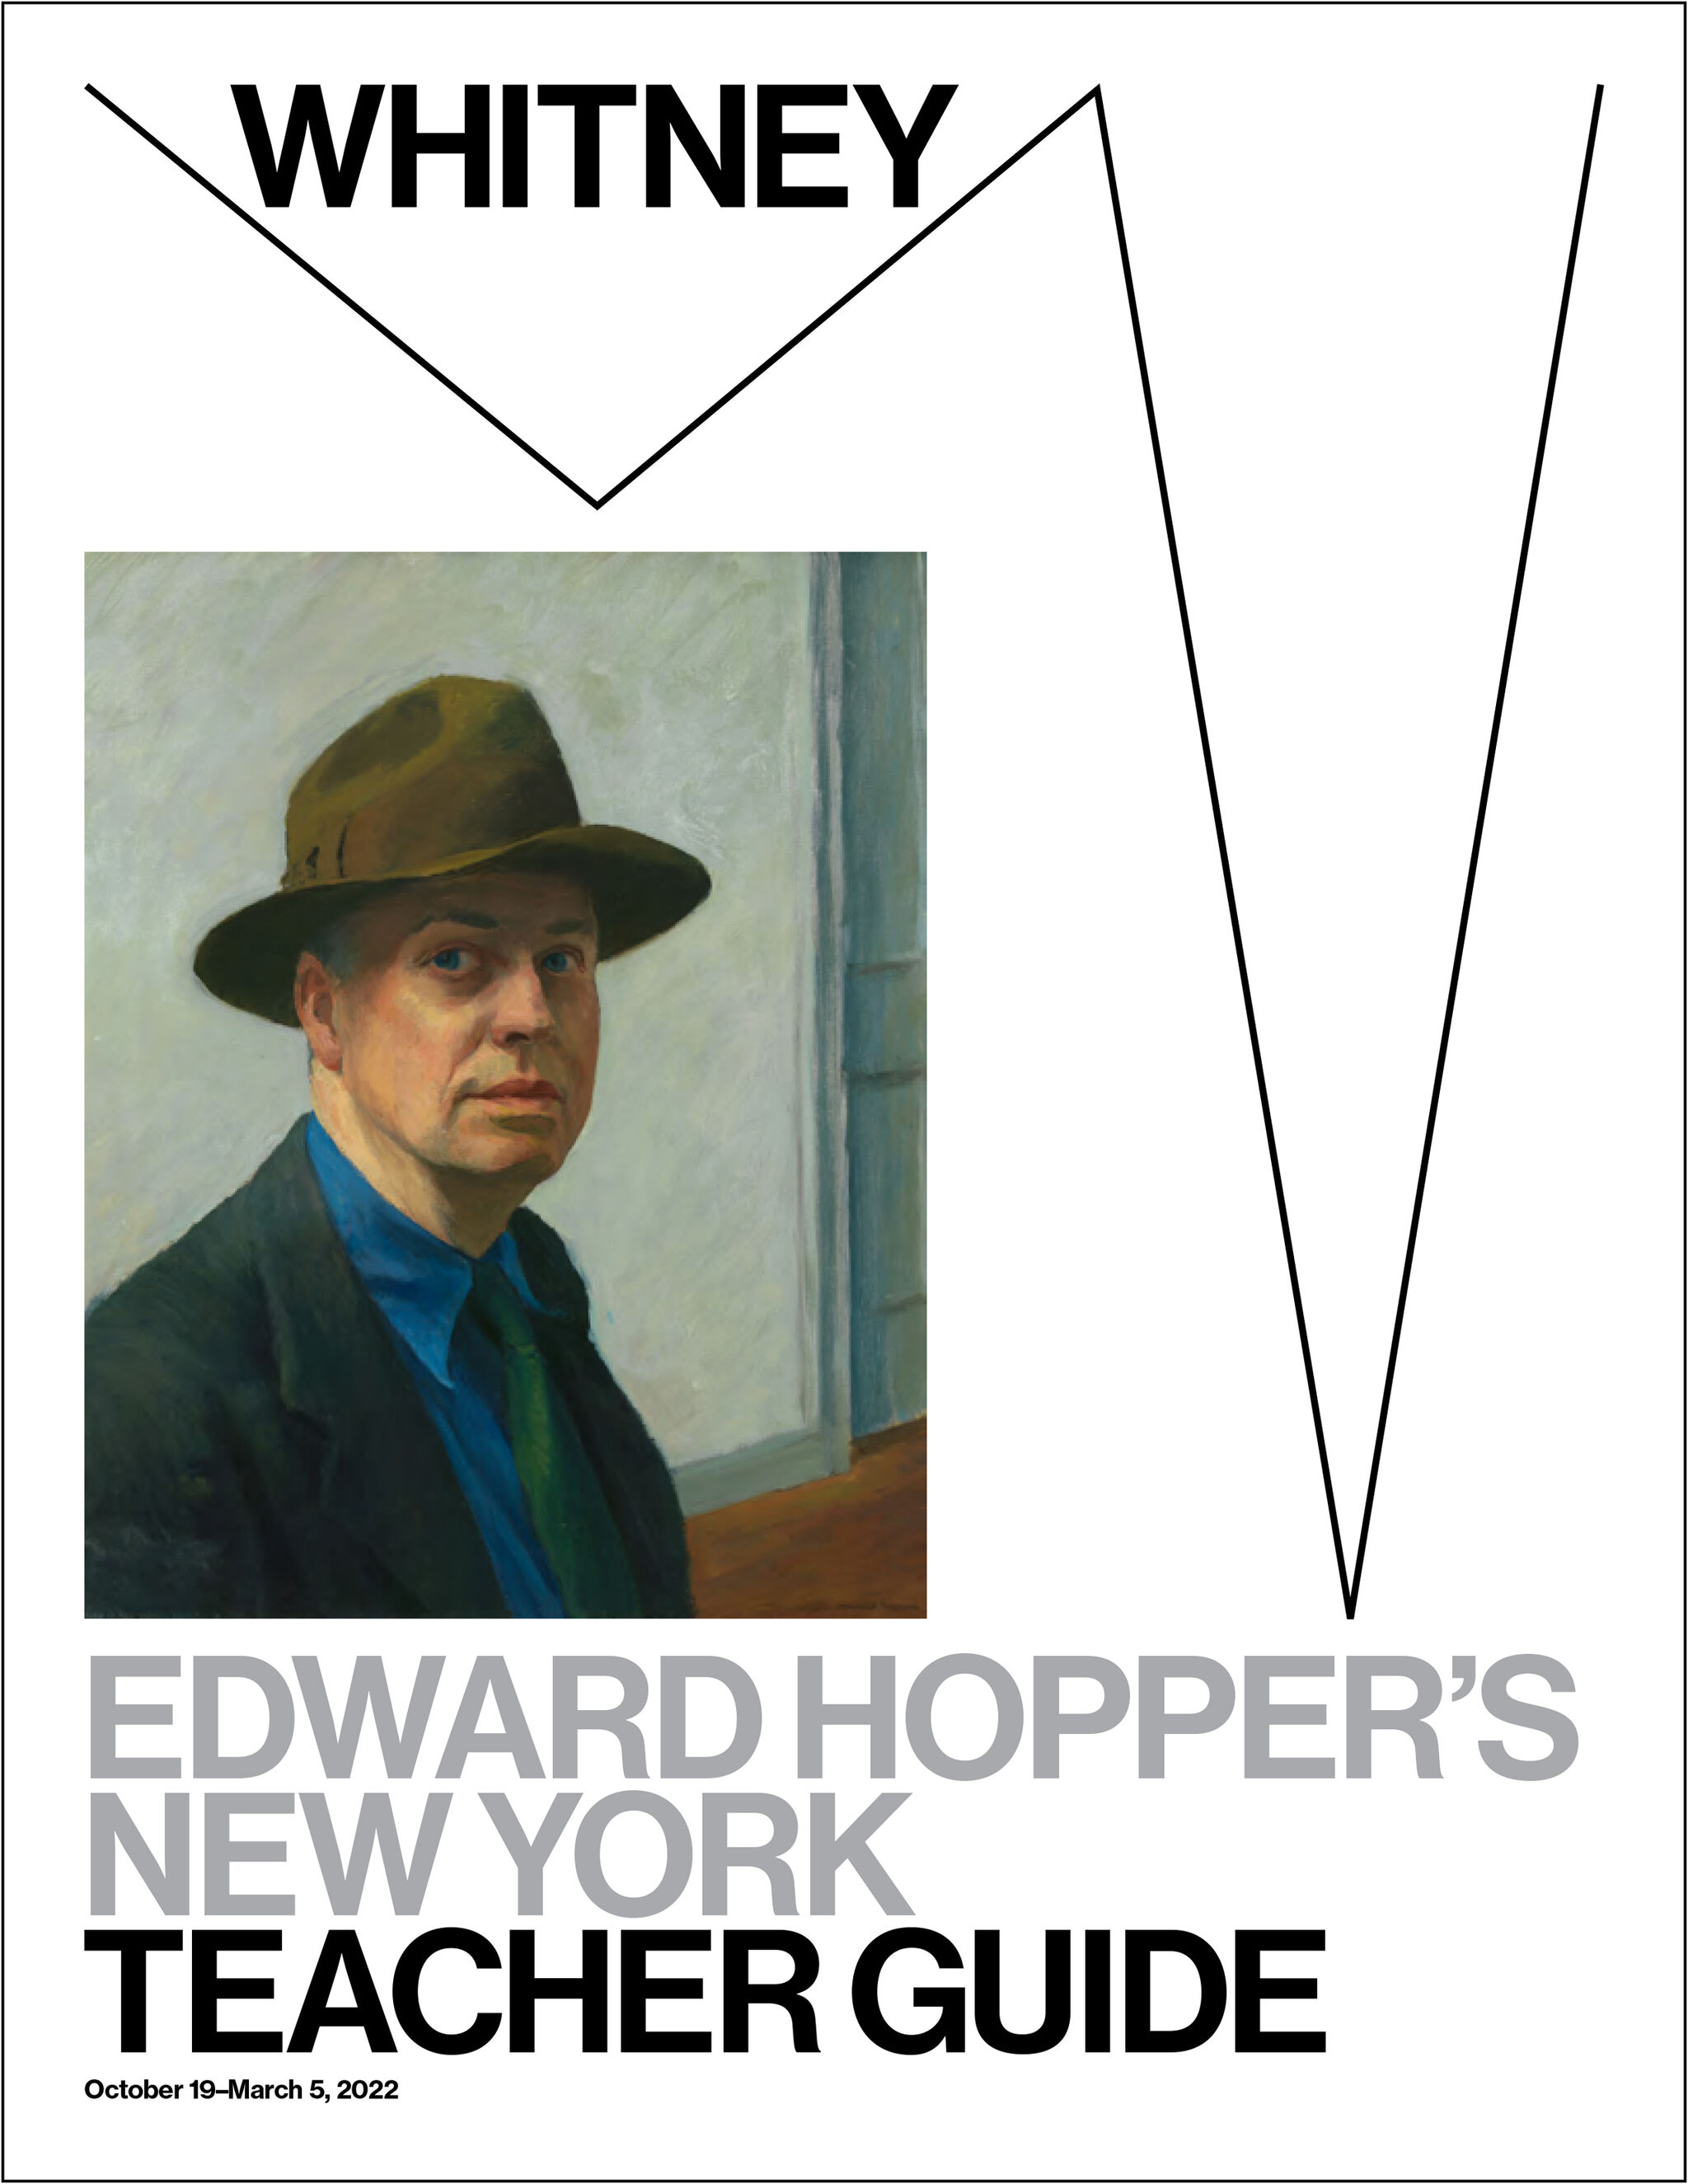 Edward Hopper's New York teaching guide cover.